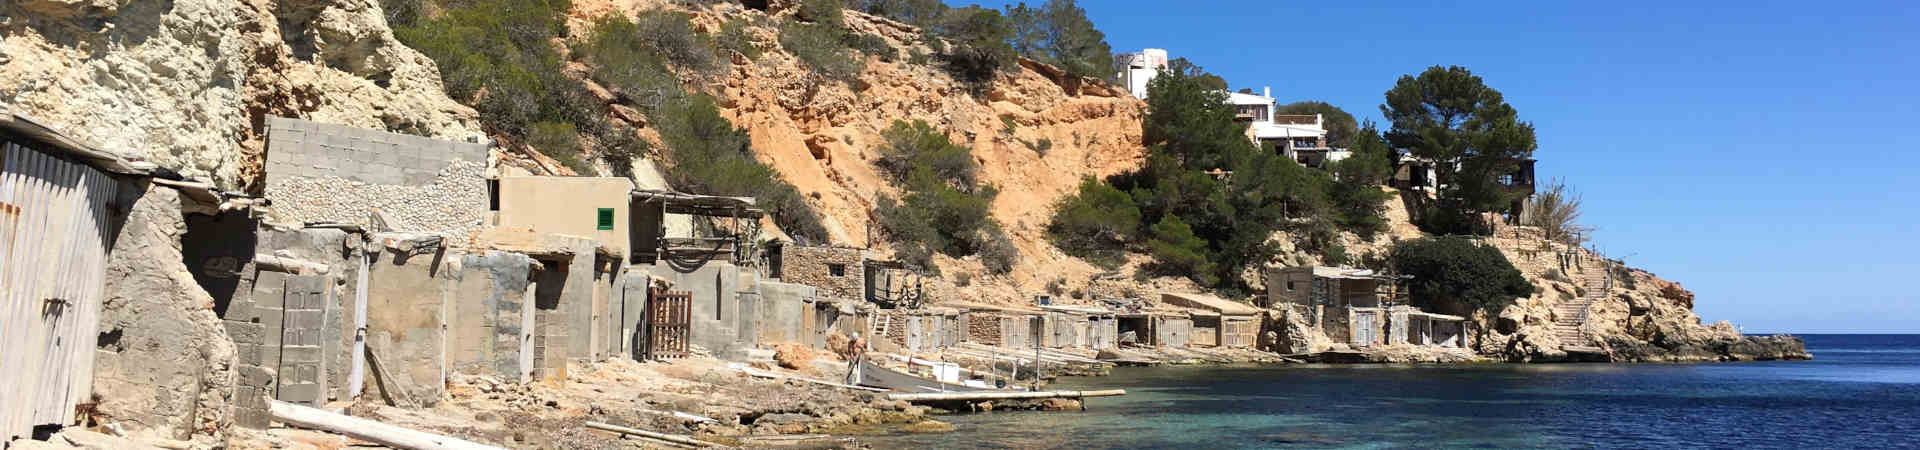 Image ressource du port de destination Ibiza pour l'itinéraire du ferry Valence - Ibiza